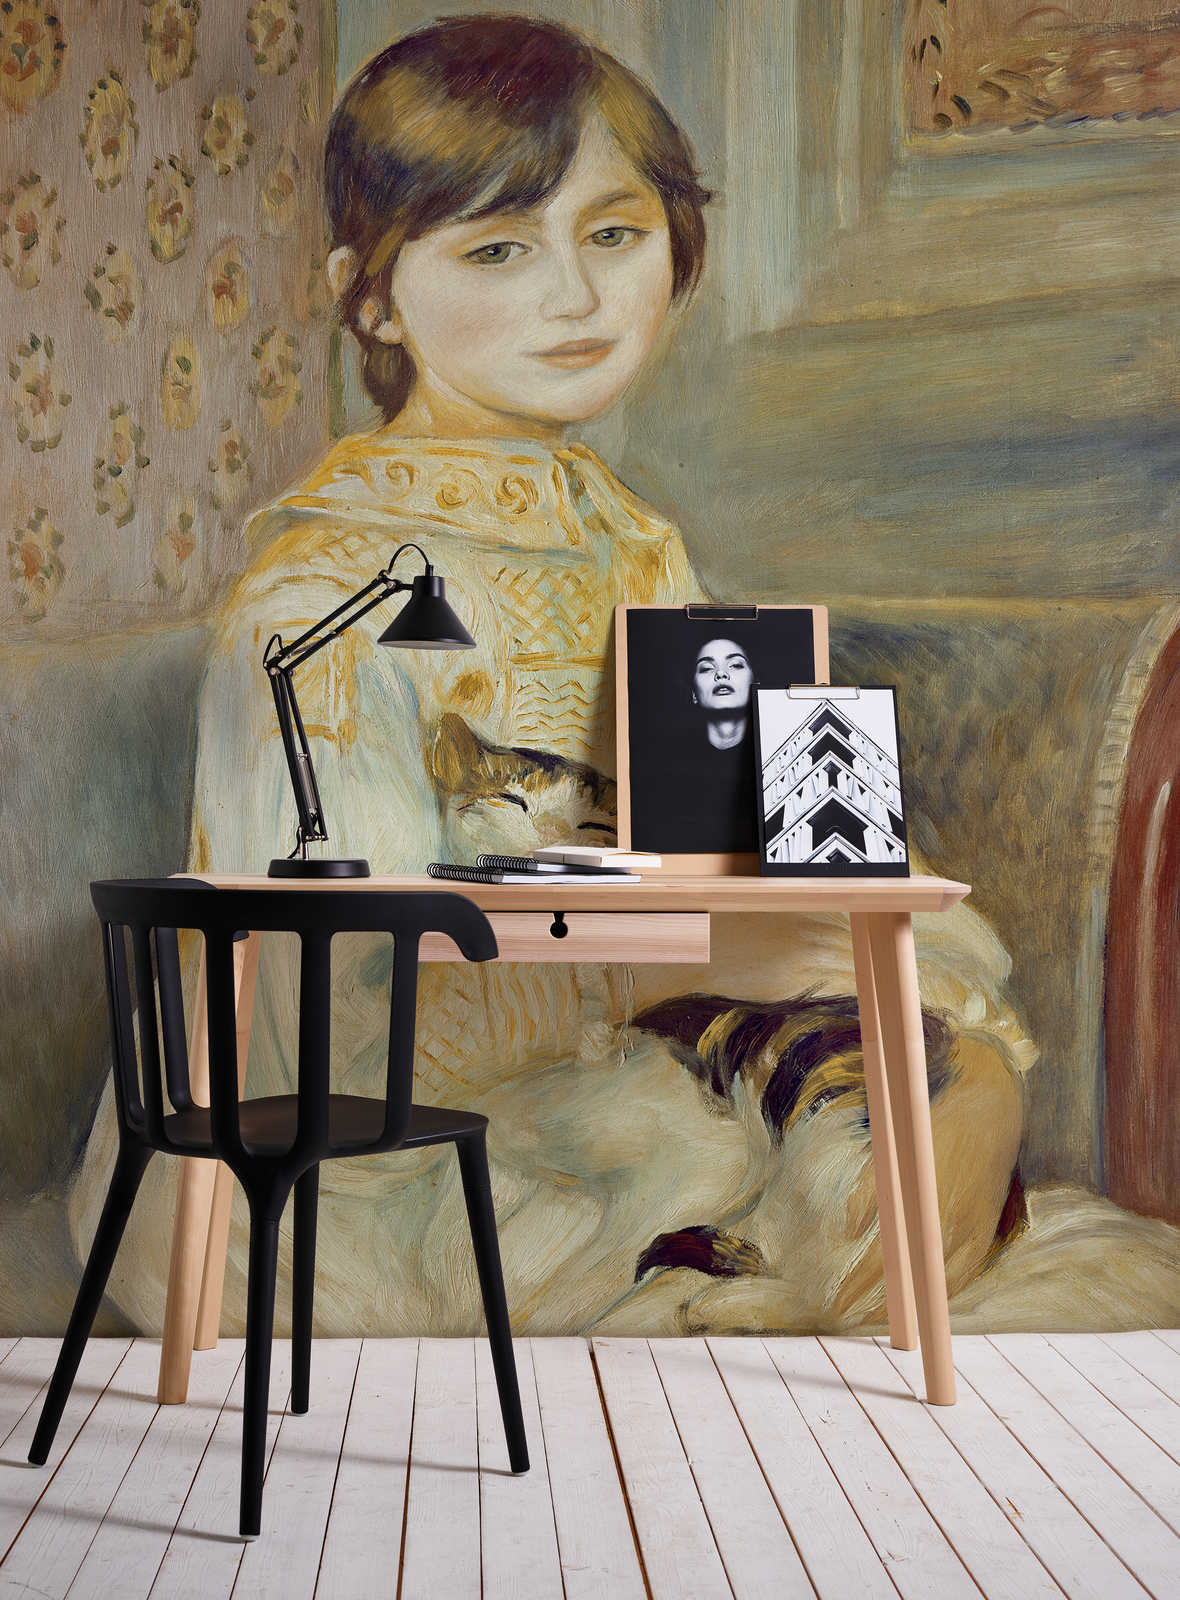             Fototapete "Mademoiselle Julie mit Katze" von Pierre Auguste Renoir
        